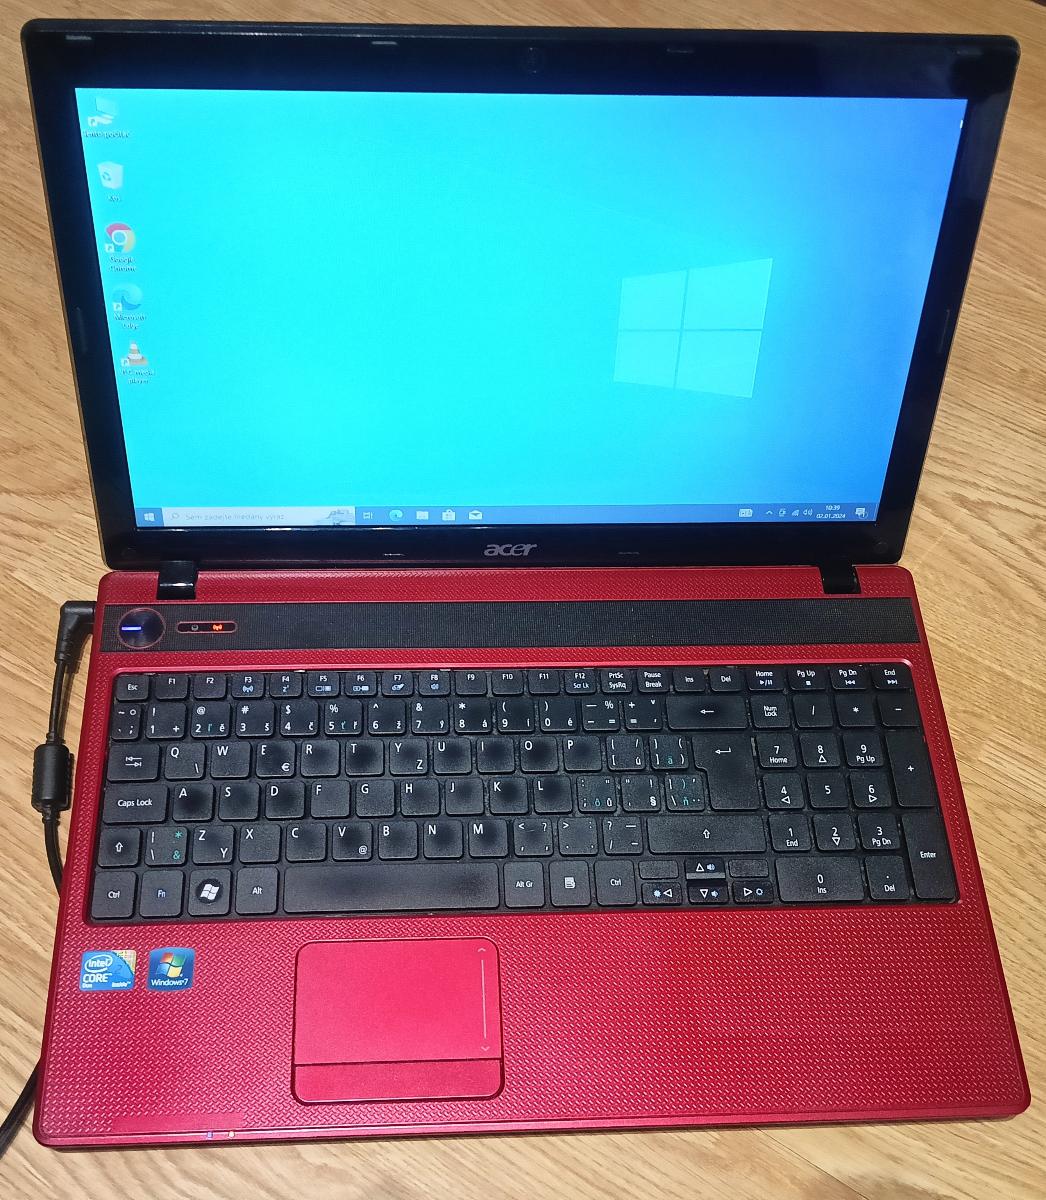 Predám starší notebook Intel Core Duo Acer 5336 - plne funkčný - Počítače a hry